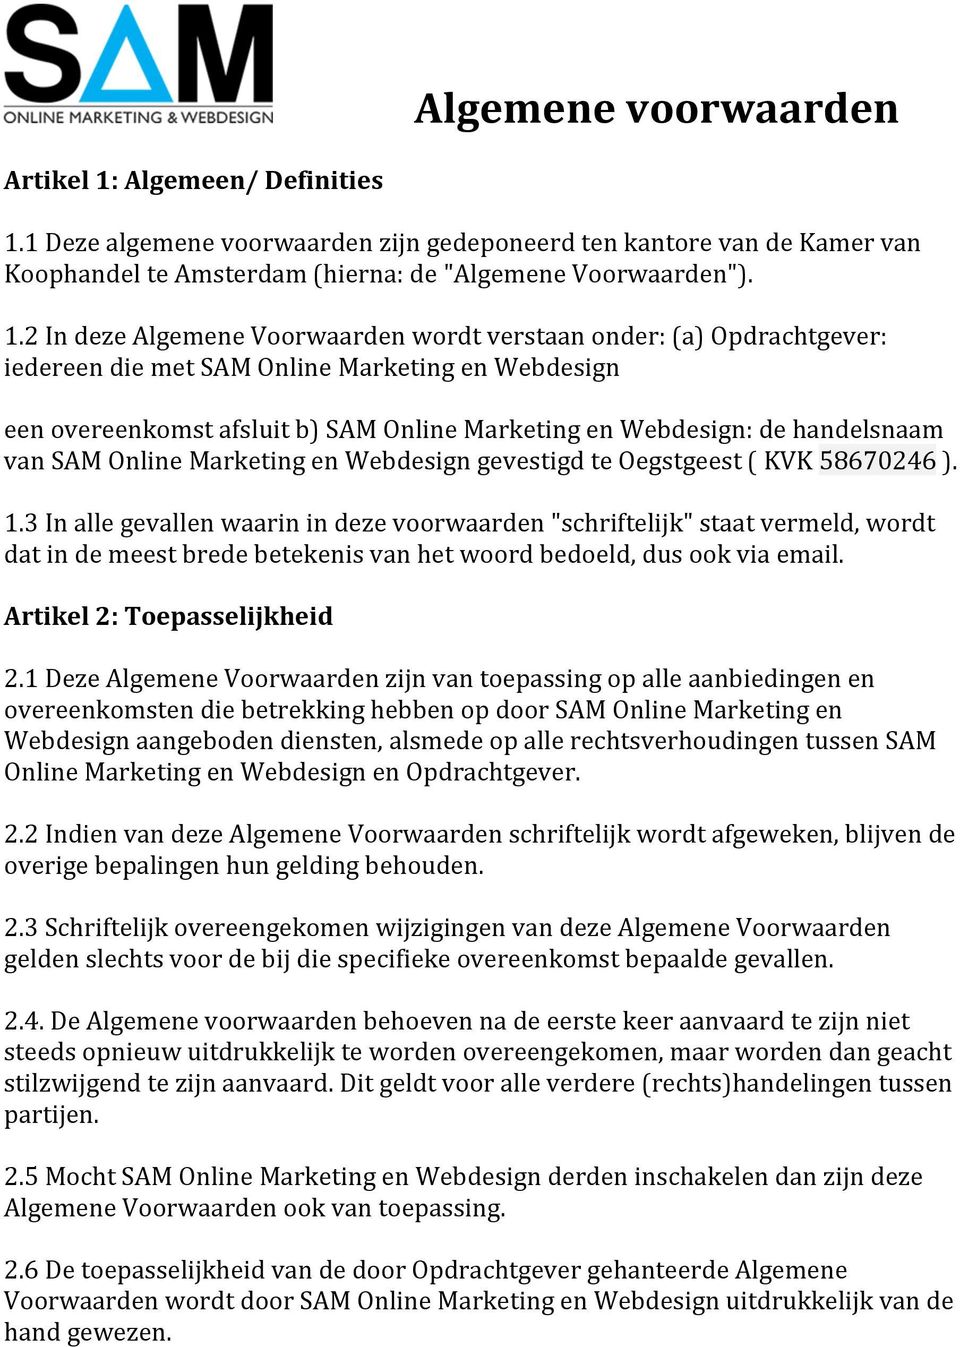 1 Deze algemene voorwaarden zijn gedeponeerd ten kantore van de Kamer van Koophandel te Amsterdam (hierna: de "Algemene Voorwaarden"). 1.